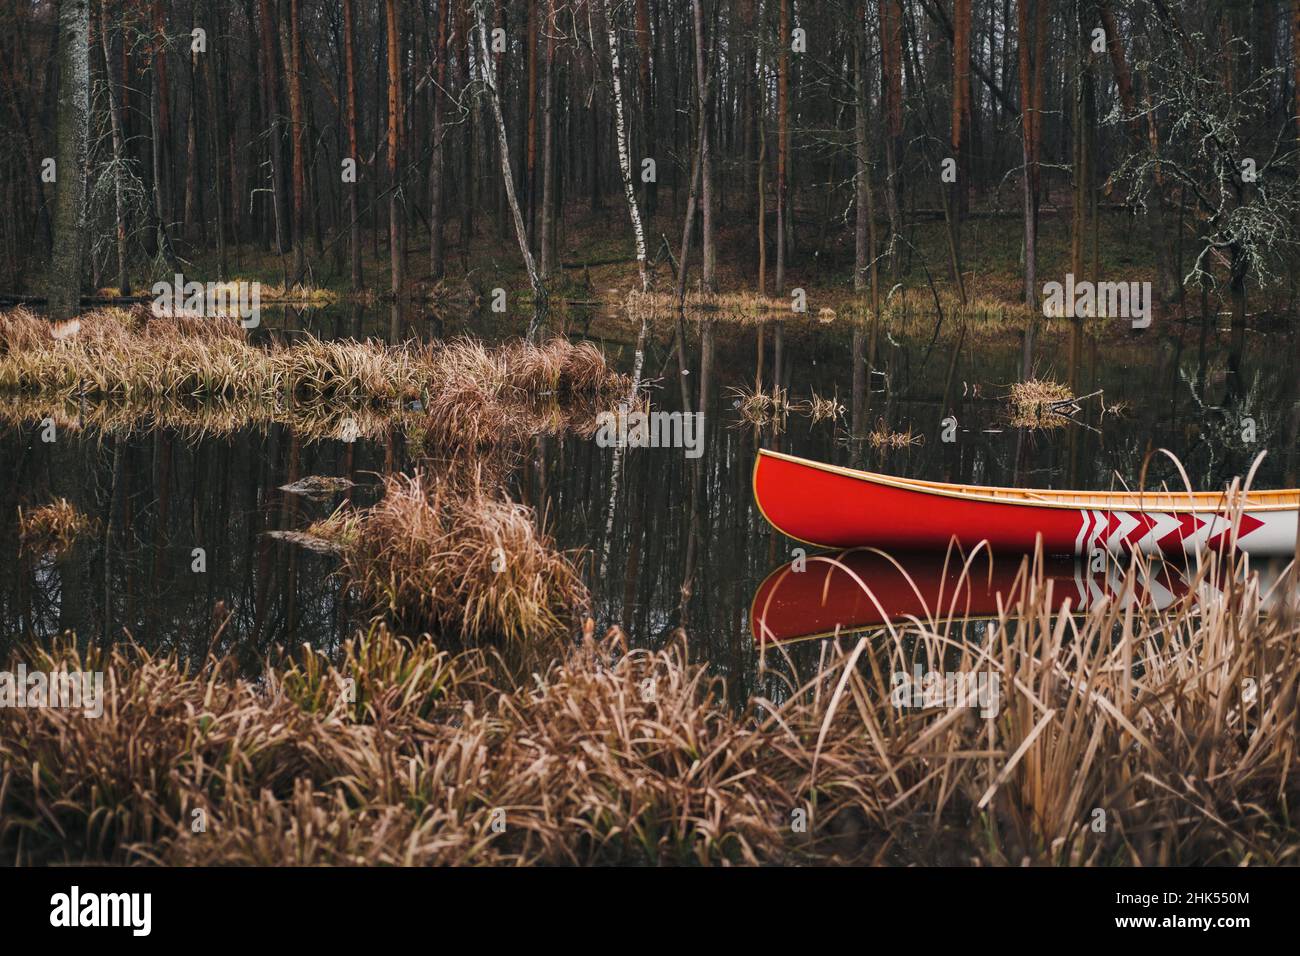 Magnifique lac forestier et canoë canadien.Bateau en bois rouge flottant sur l'étang, au printemps ou en automne Banque D'Images